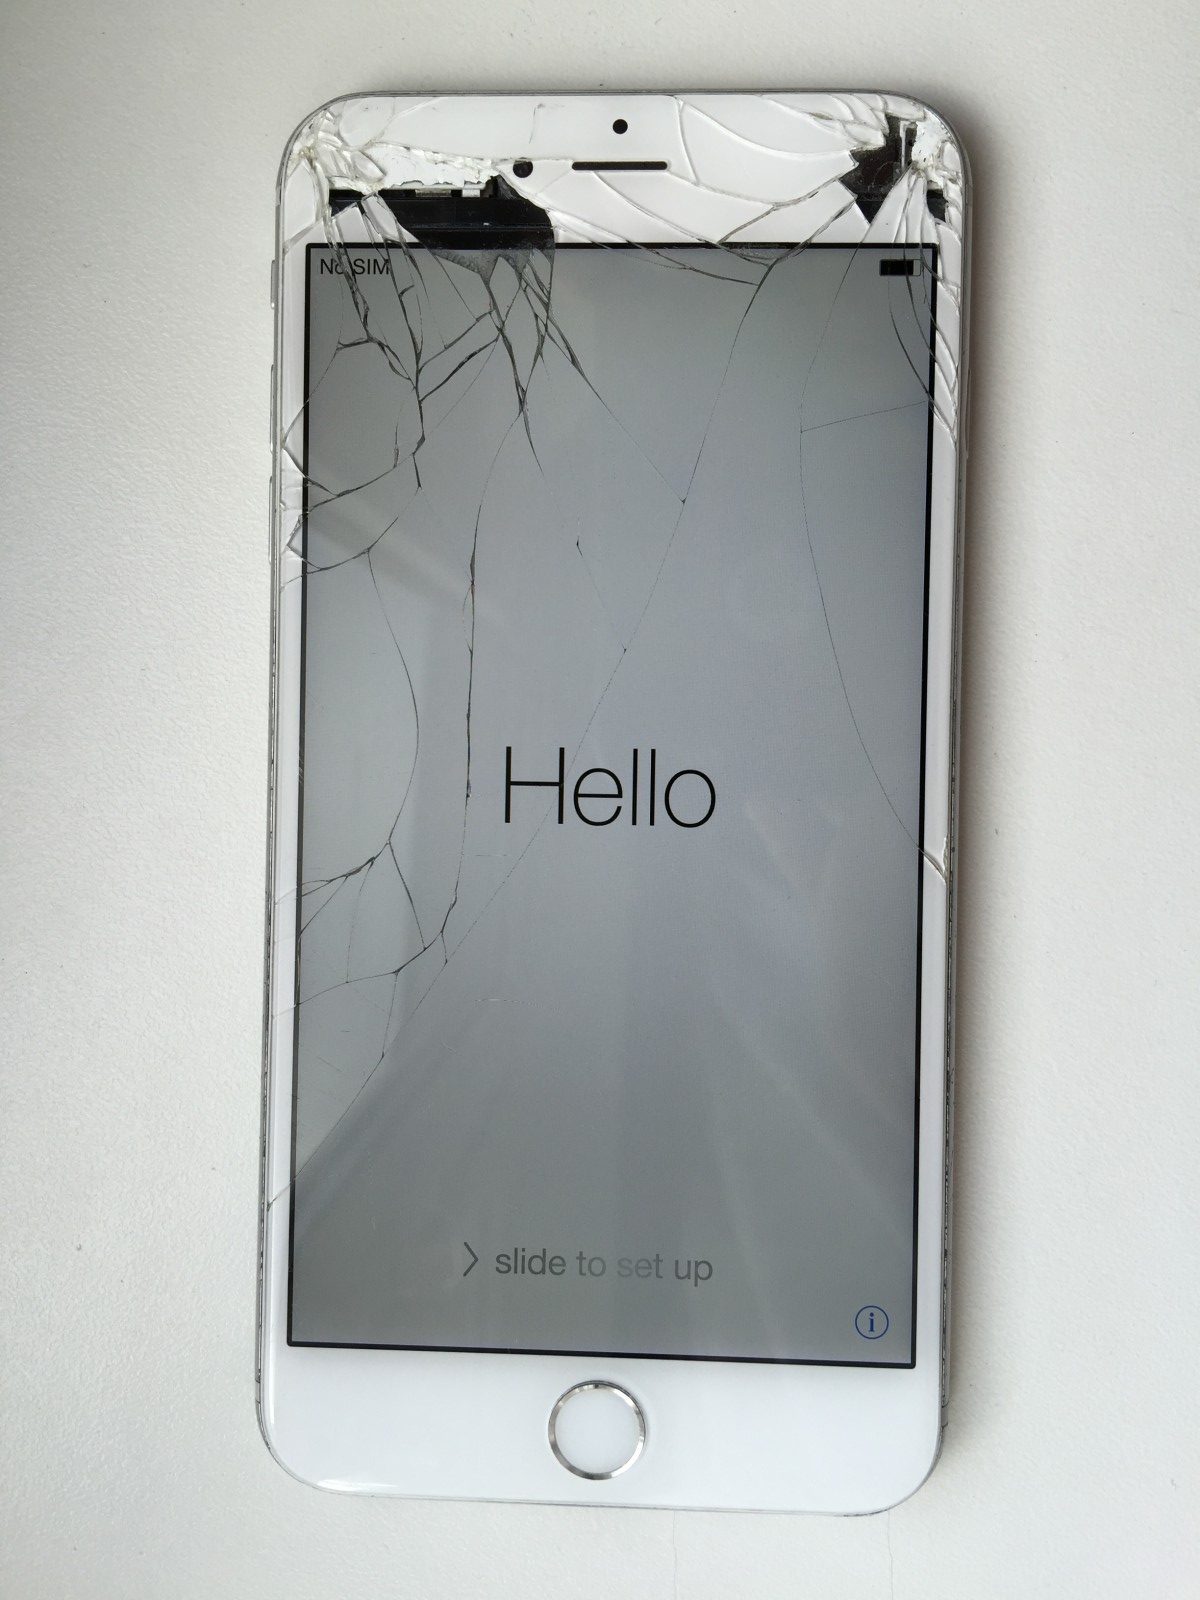 iPhone 6 (6 plus): Замена стекла (дисплея) на Пионерской, СПб, недорого и быстро. «Дилакси»